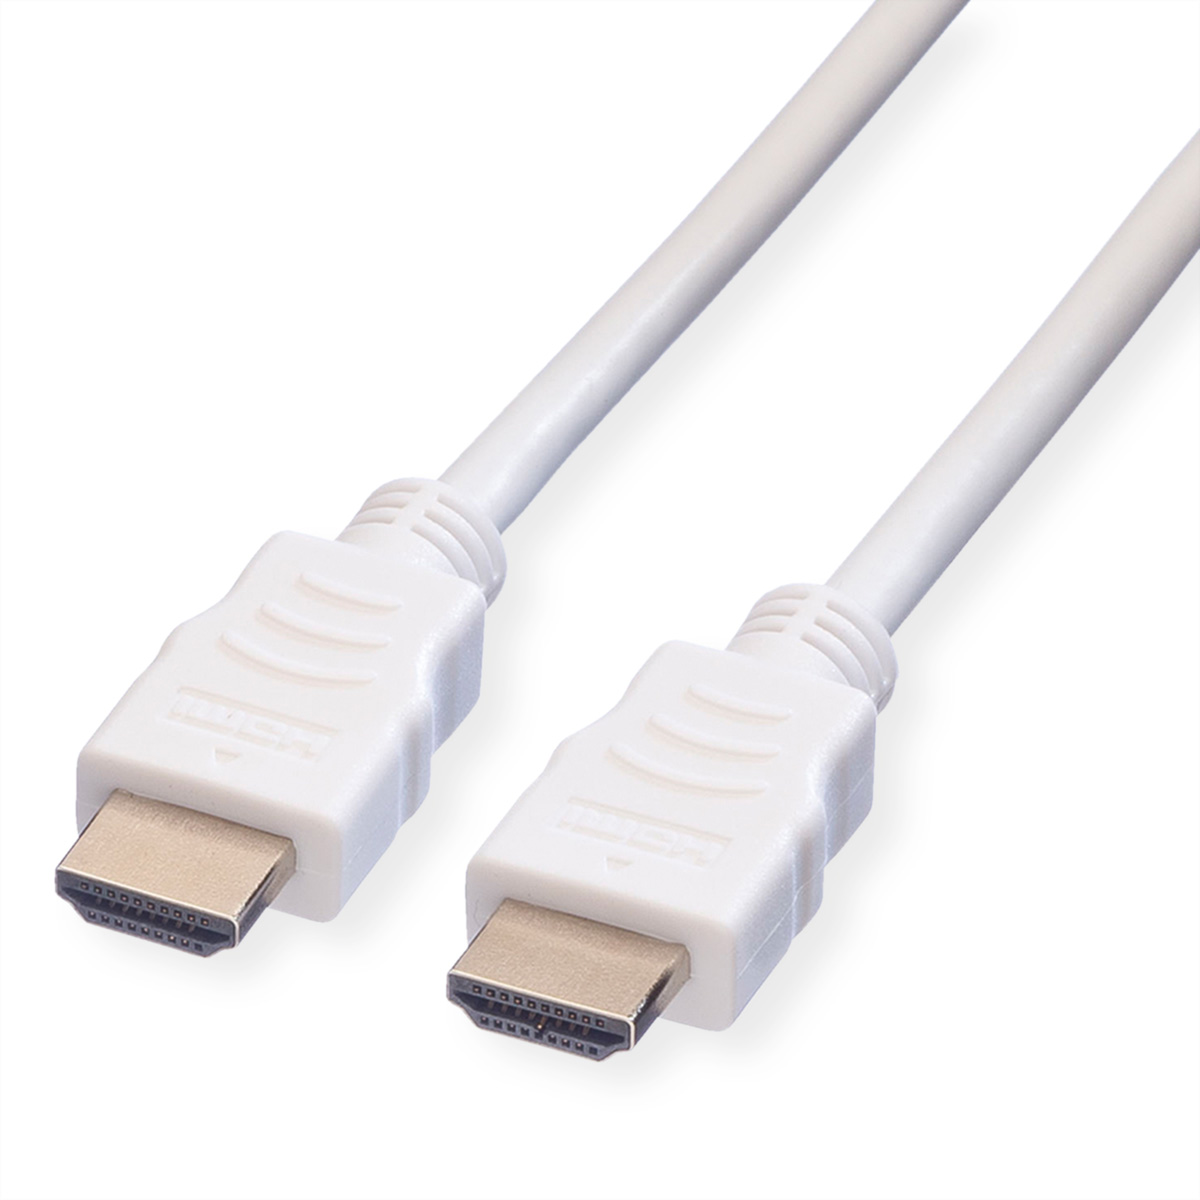 VALUE HDMI High Speed Kabel mit Ethernet, weiß, 3 m